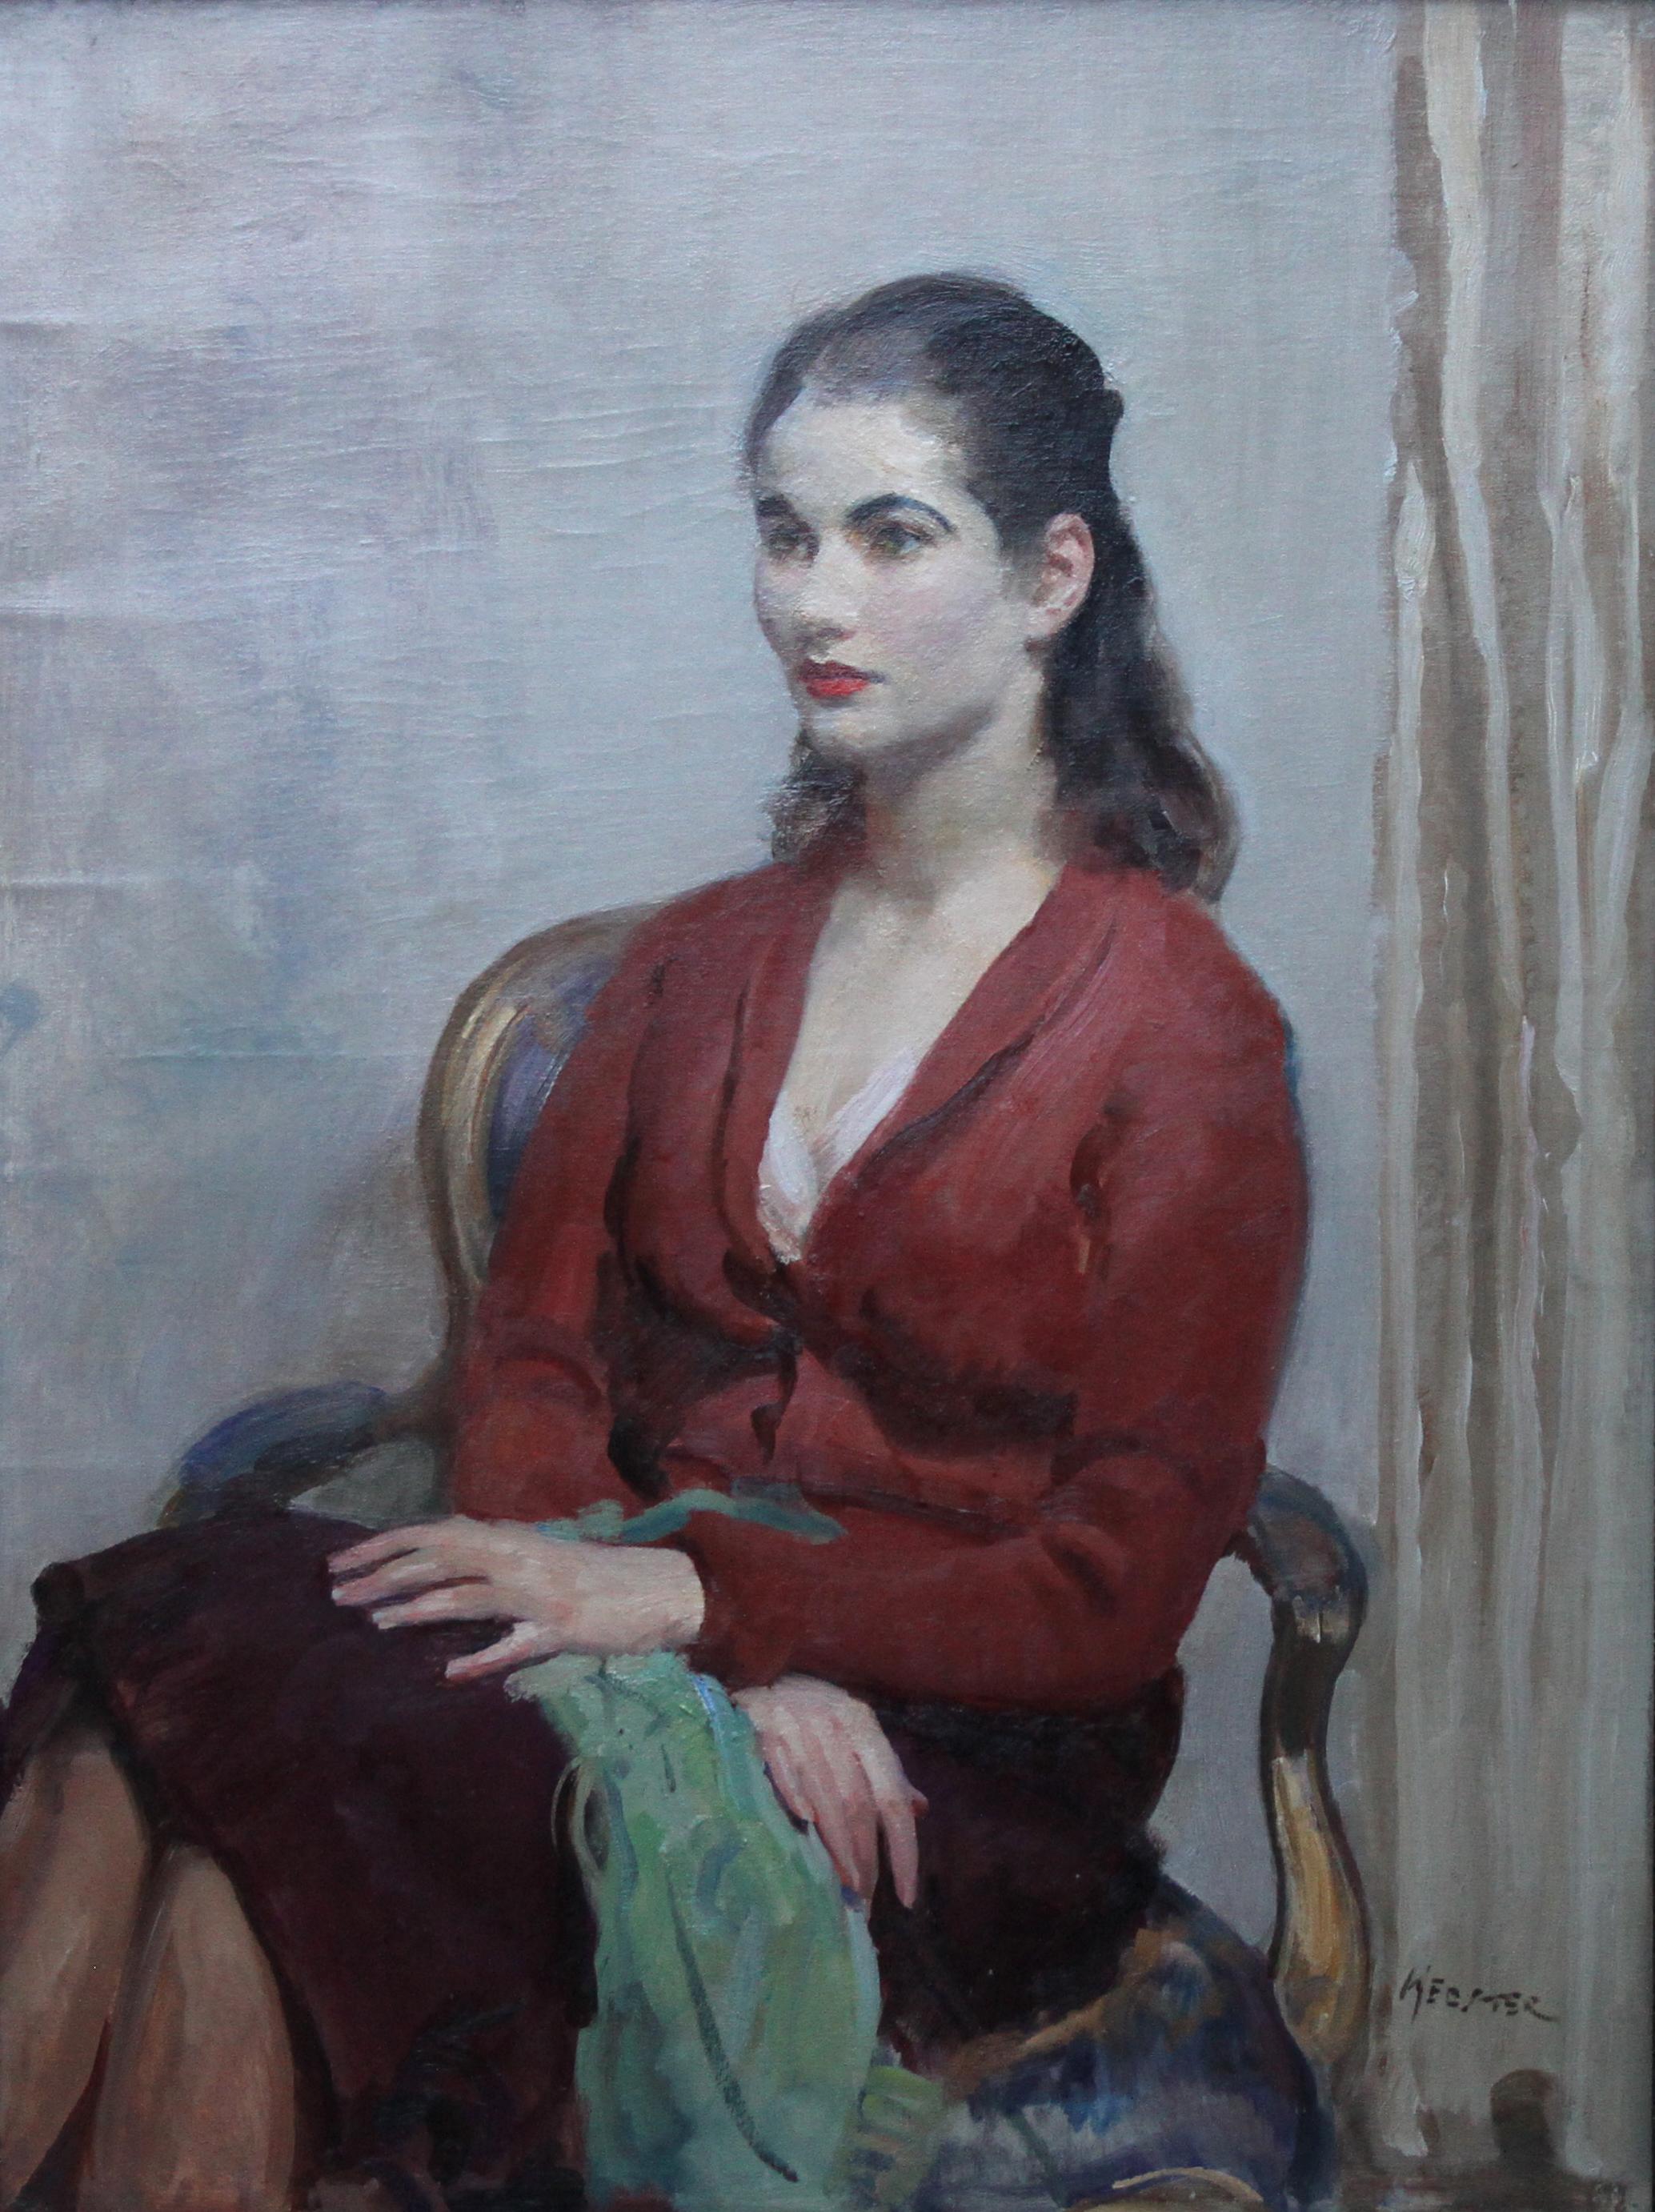 Portrait de jeune femme en rouge - Peinture à l'huile impressionniste britannique des années 20 - intérieur - Painting de Walter Ernest Webster